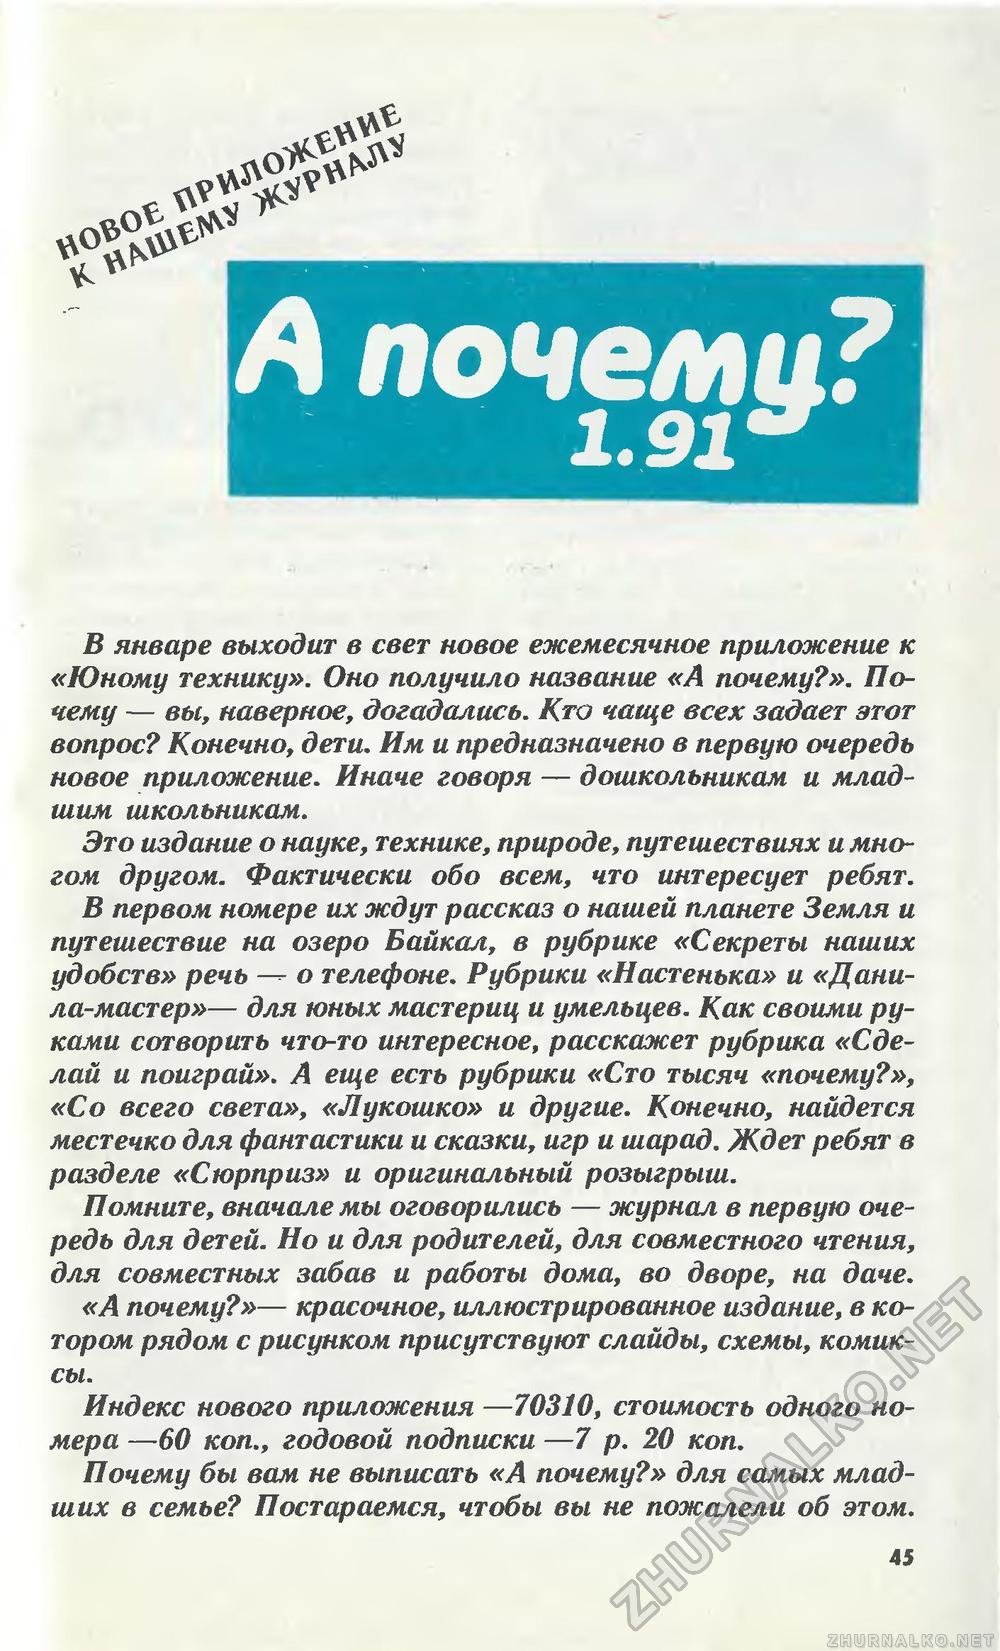   1991-01,  49